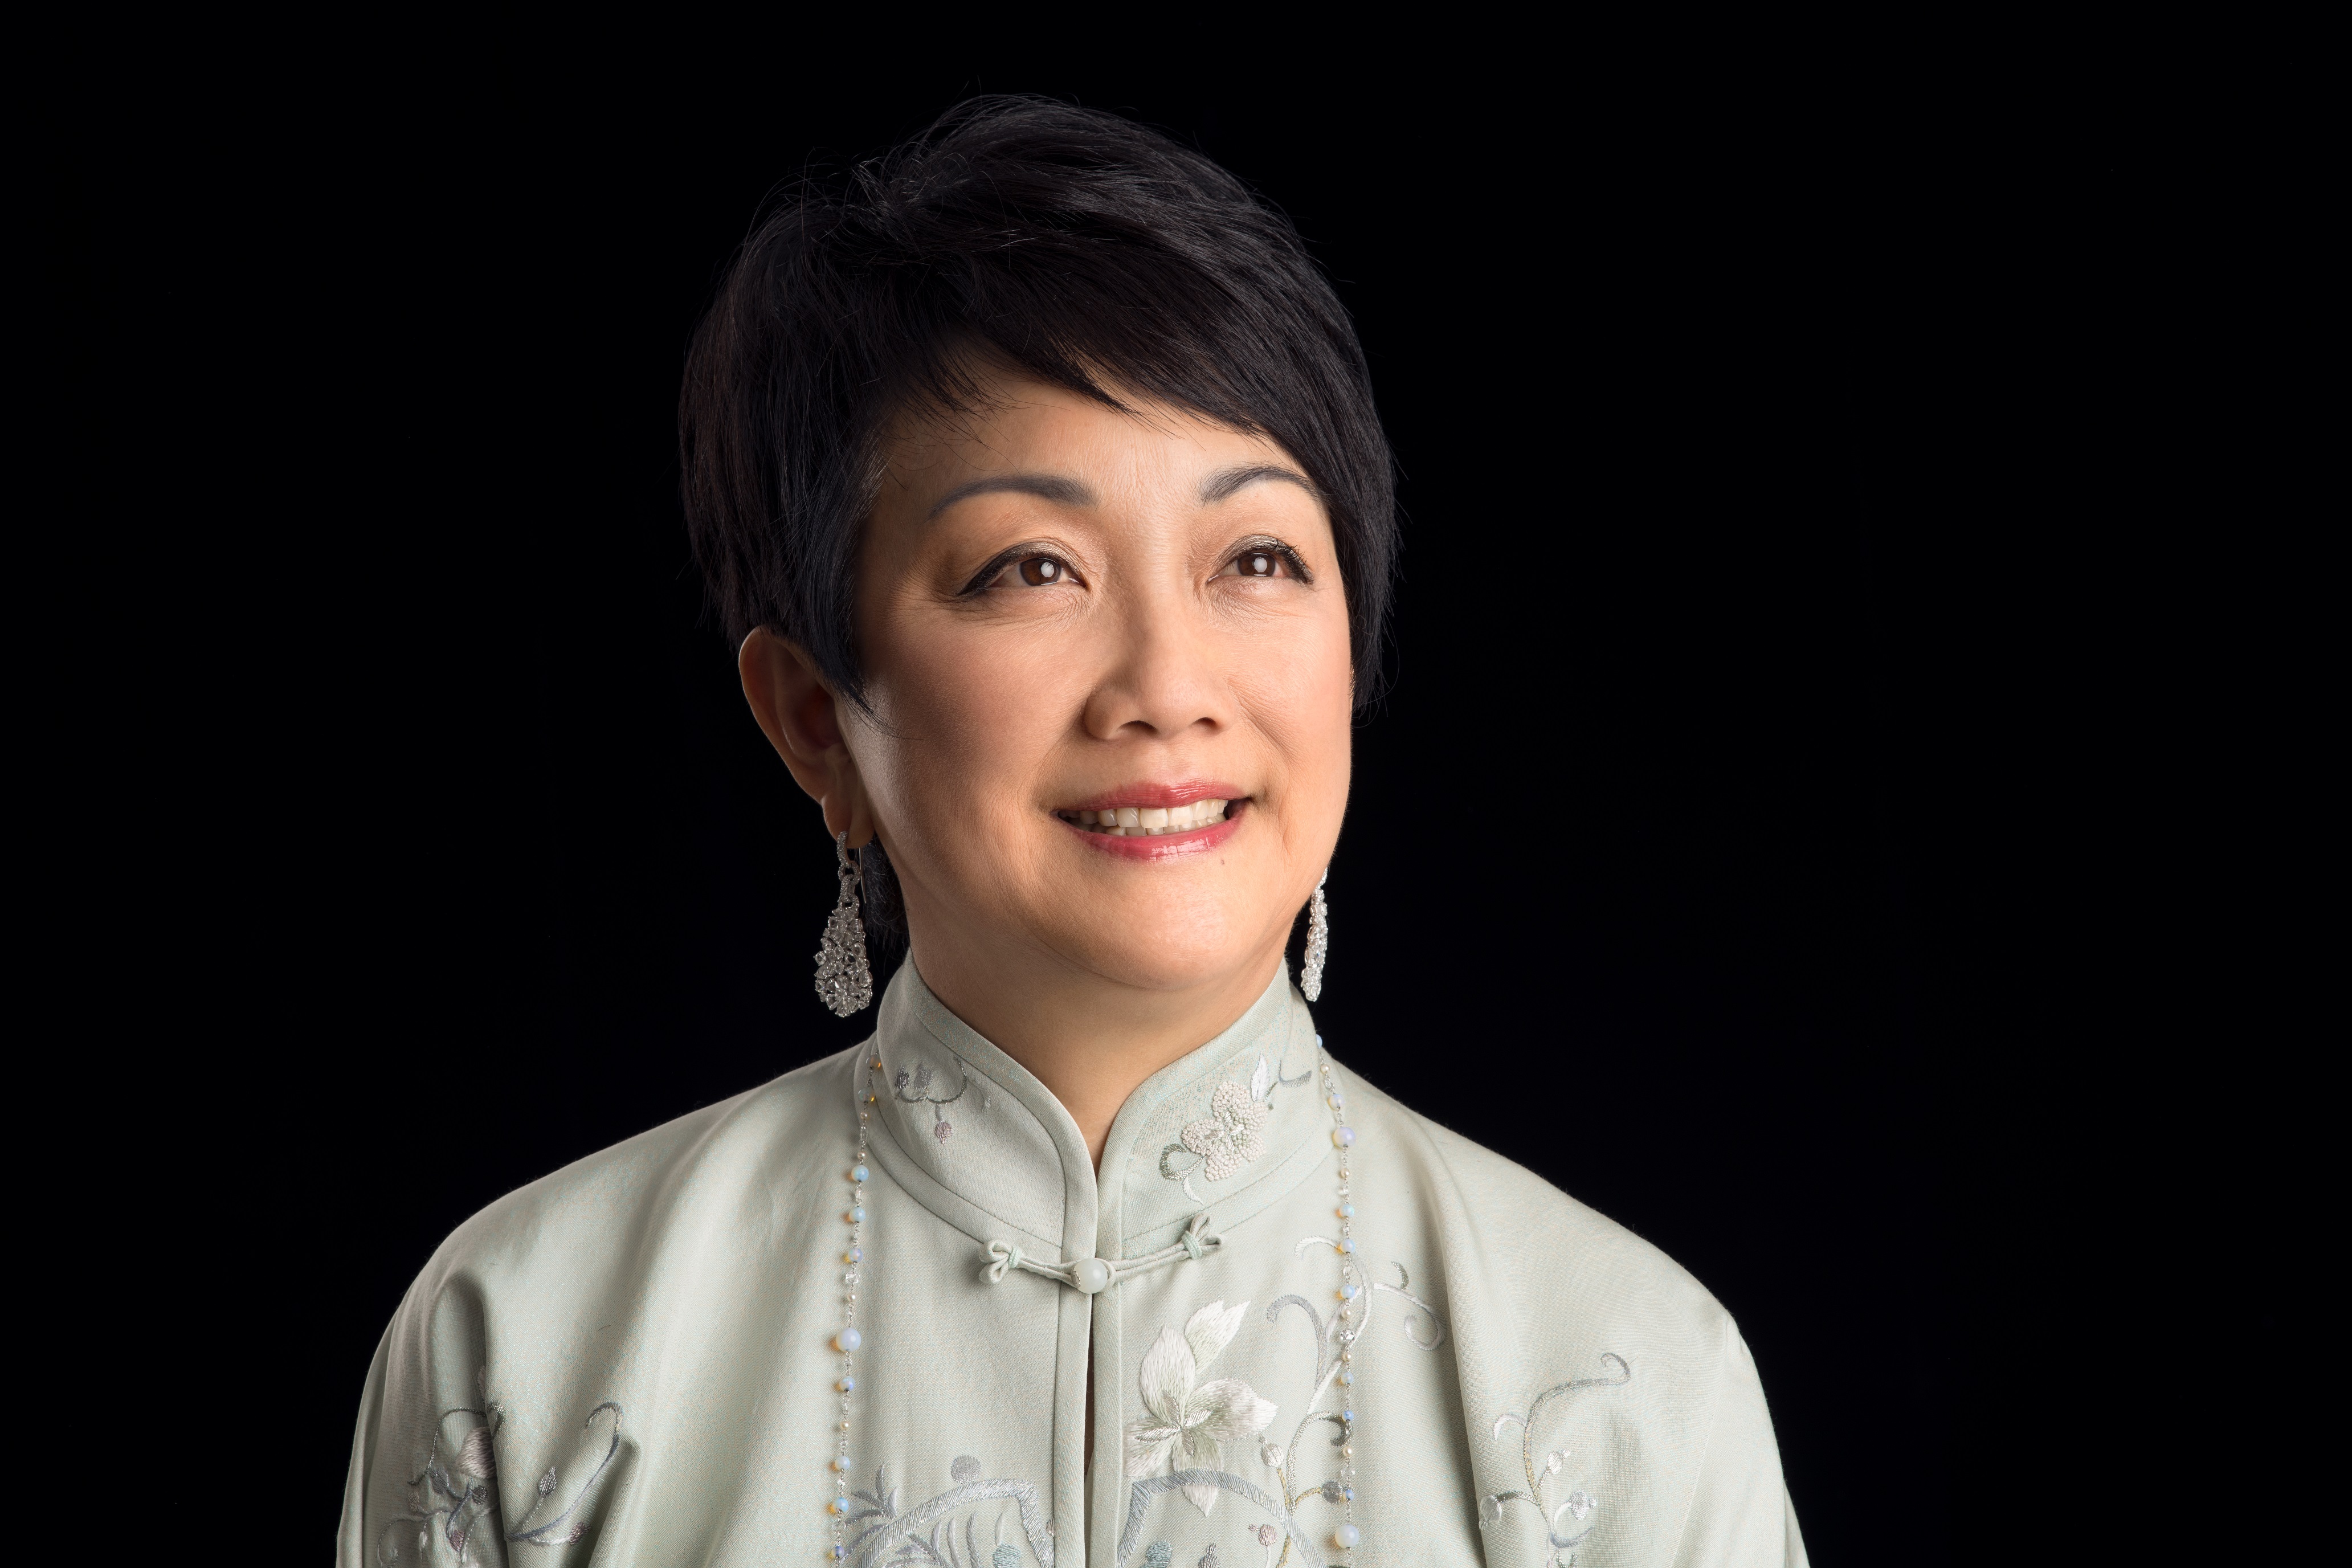 Ms. Irene Yun Lien Lee